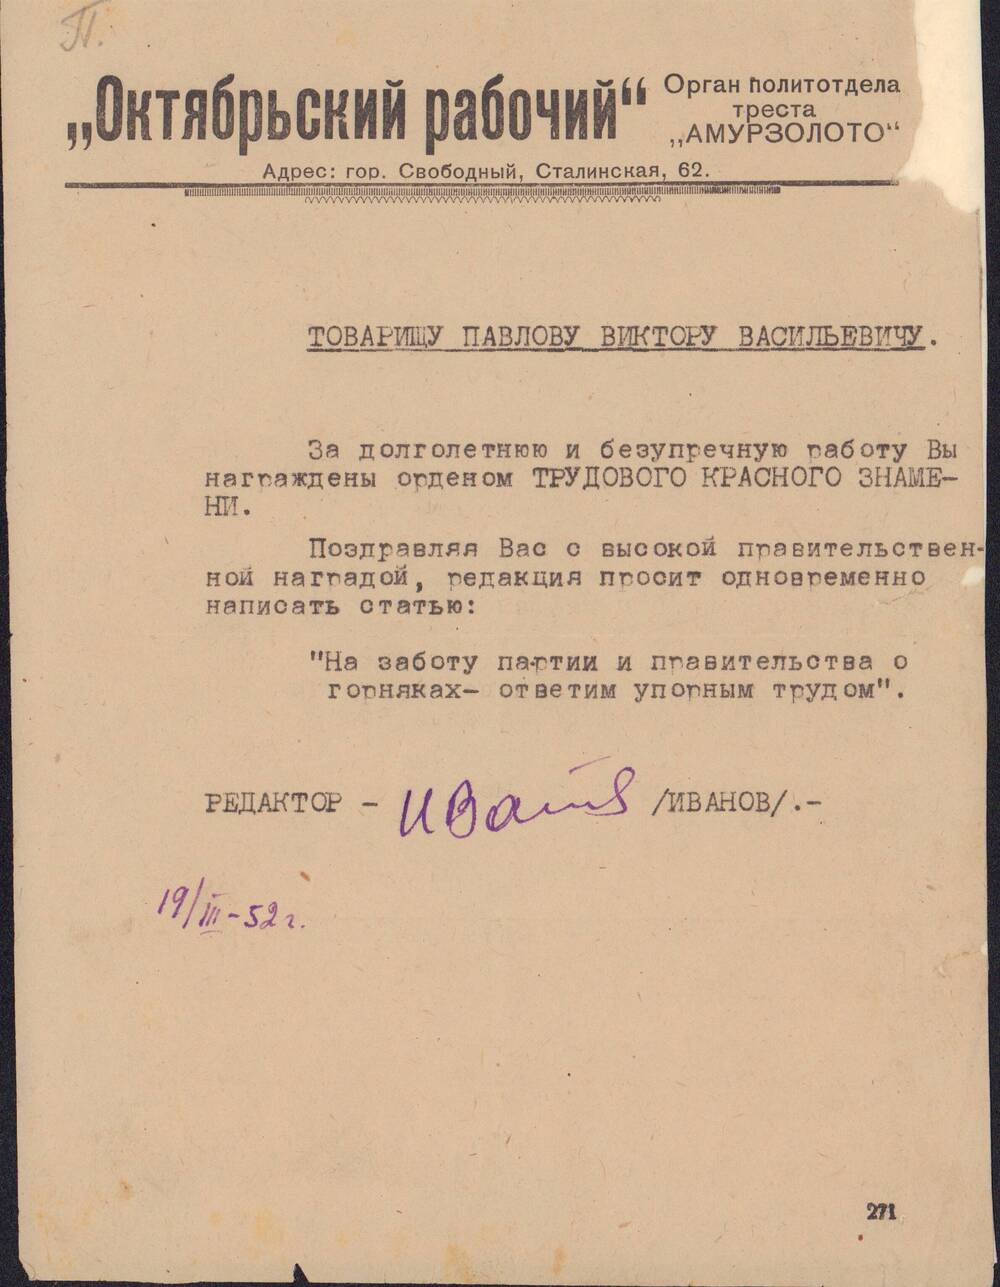 Поздравление с правительственной наградой орденом Трудового Красного Знамени от редактора газеты Октябрьский рабочий от 19 марта 1952 года.